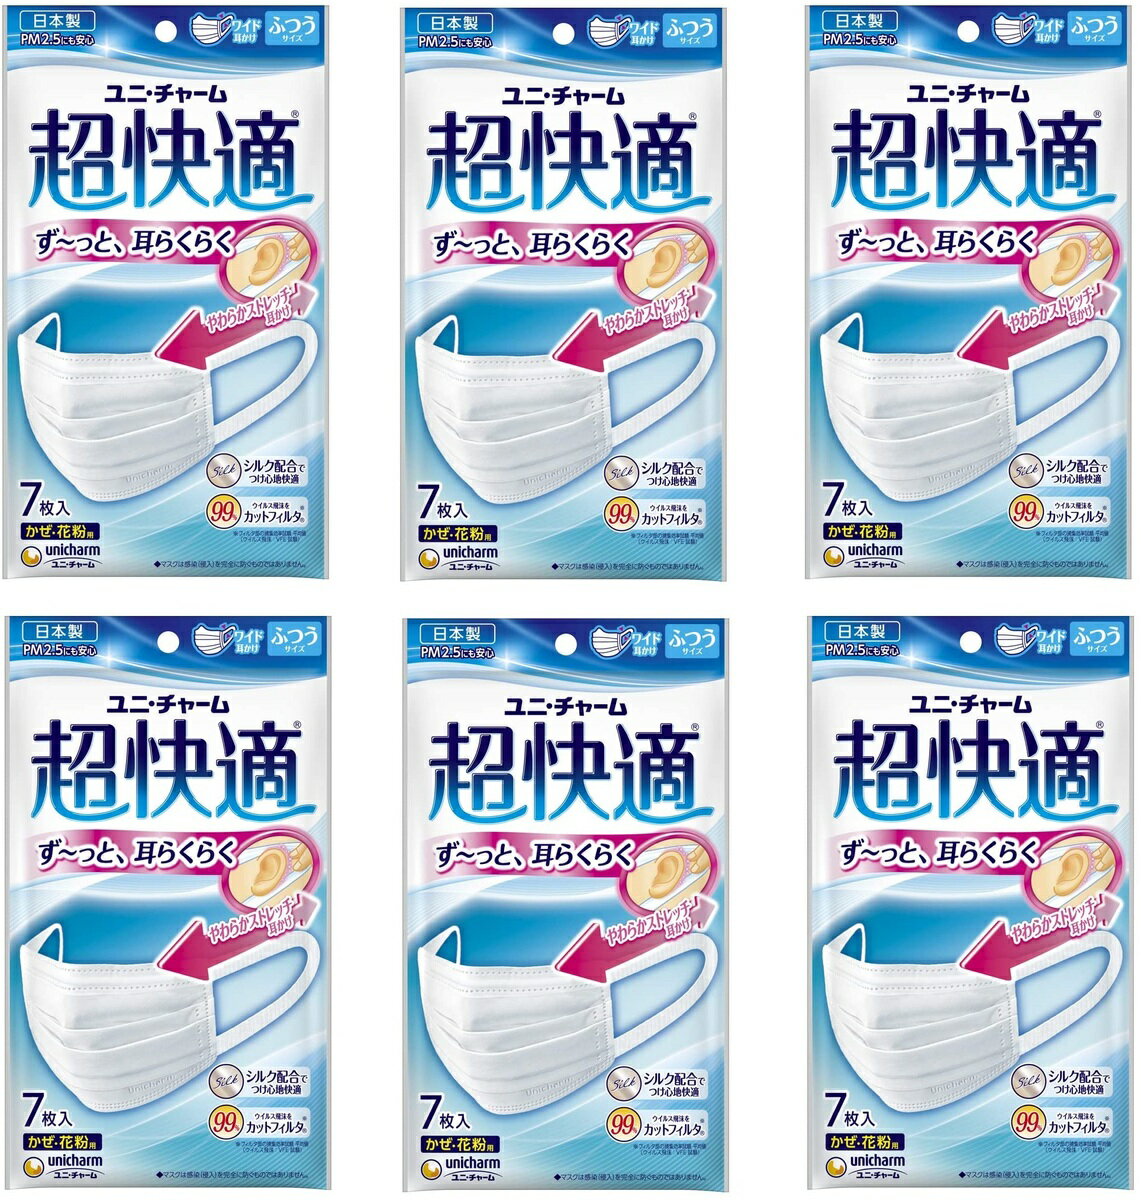 (日本製 PM2.5対応)超快適マスク プリ-ツタイプ シルク配合 ふつう 7枚入(unicharm) ふつうサイズ 7枚入 × 6個セット